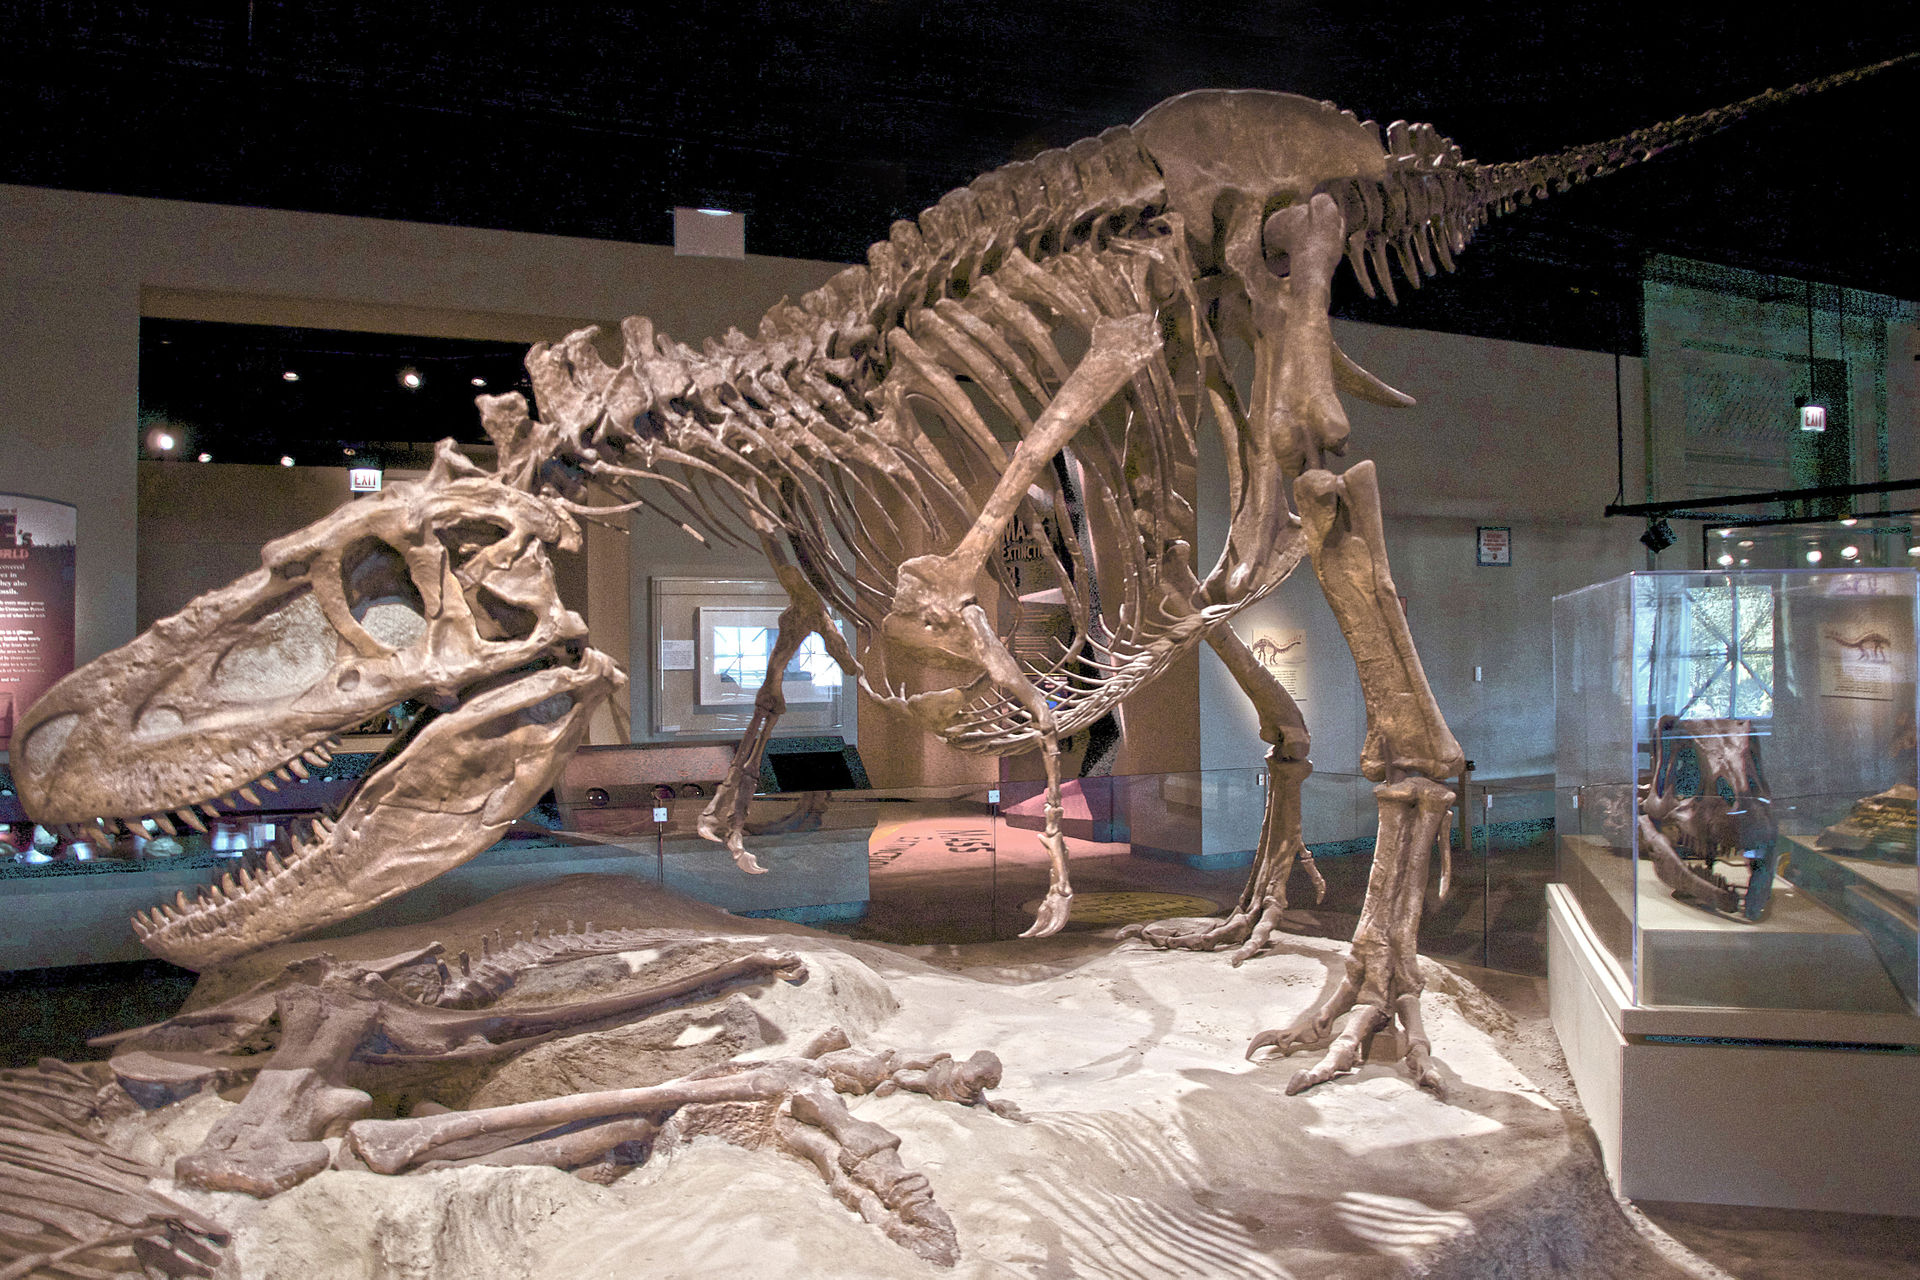 Kosterní exemplář druhu Daspletosaurus torosus v expozici instituce Field Museum of Natural History v Chicagu. Je možné, že populární Tyrannosaurus rex se vyvinul právě z daspletosaura nebo některého blízce příbuzného (a nám dosud neznámého) rodu tyr